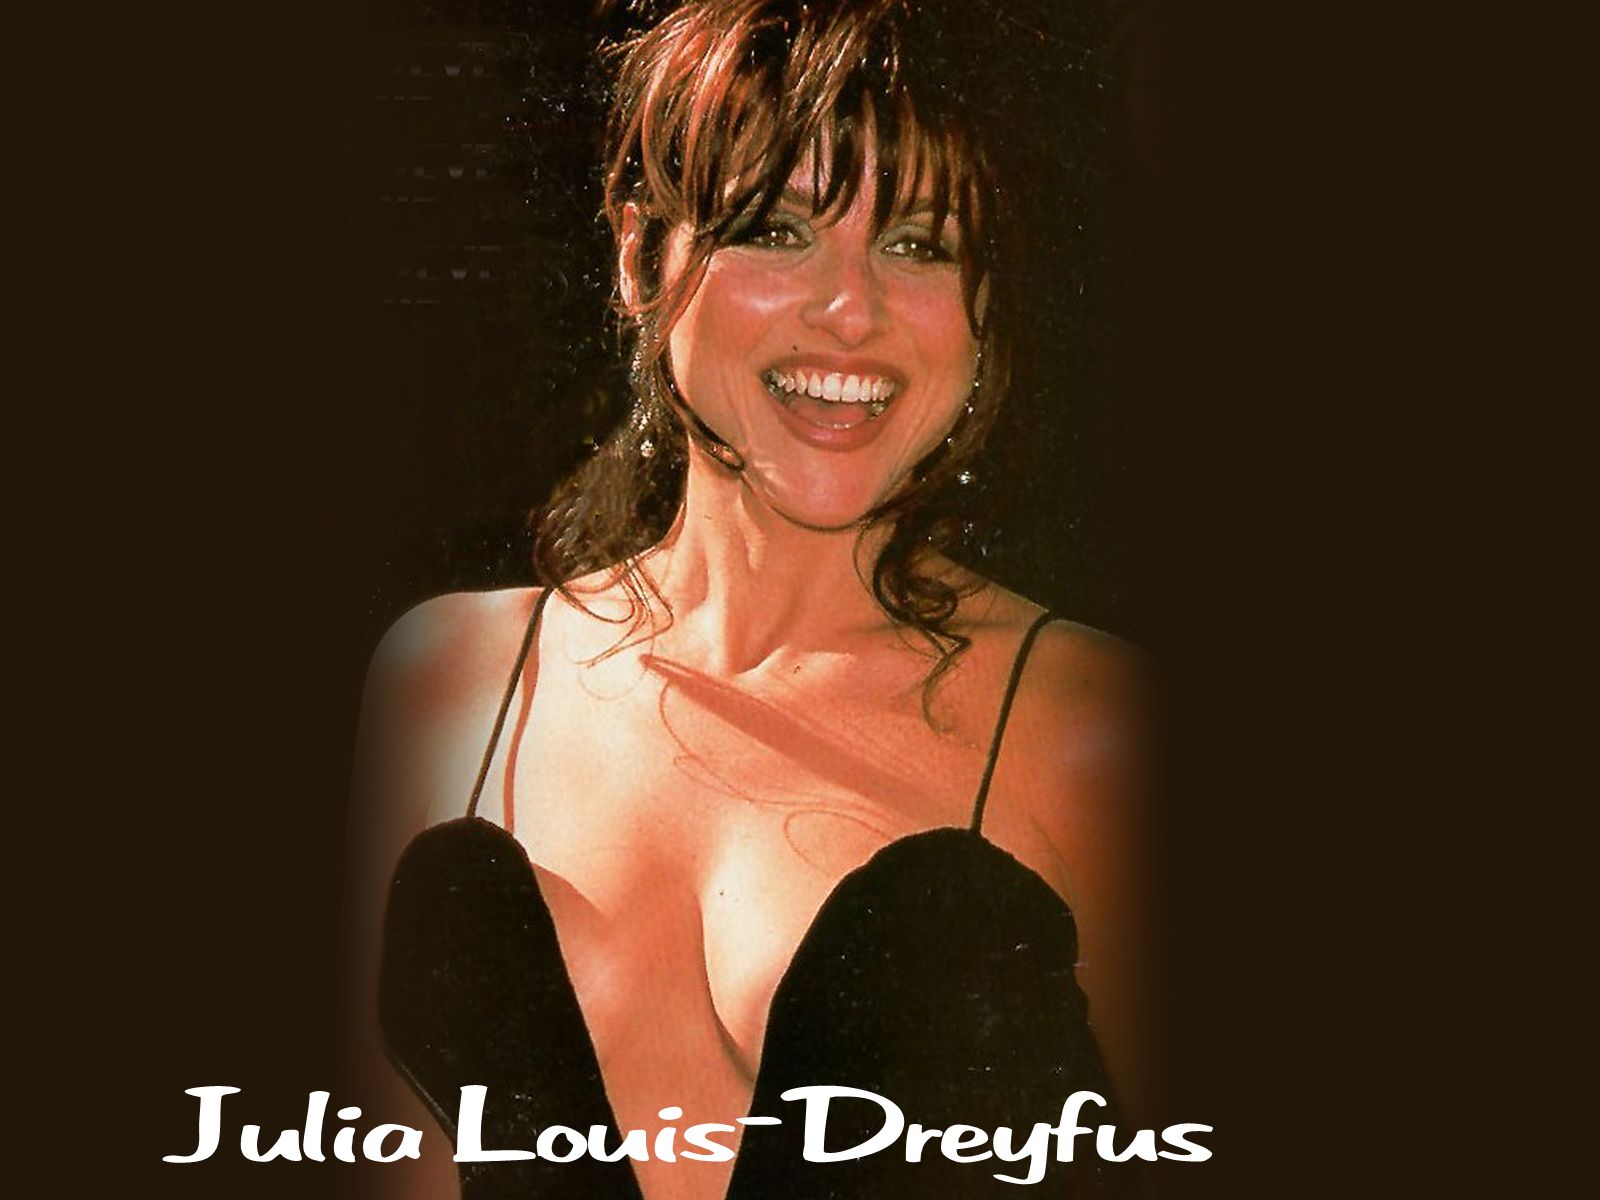 Julia-Louis-Dreyfus-julia-louis-dreyfus-32541911-1600-1200.jpg